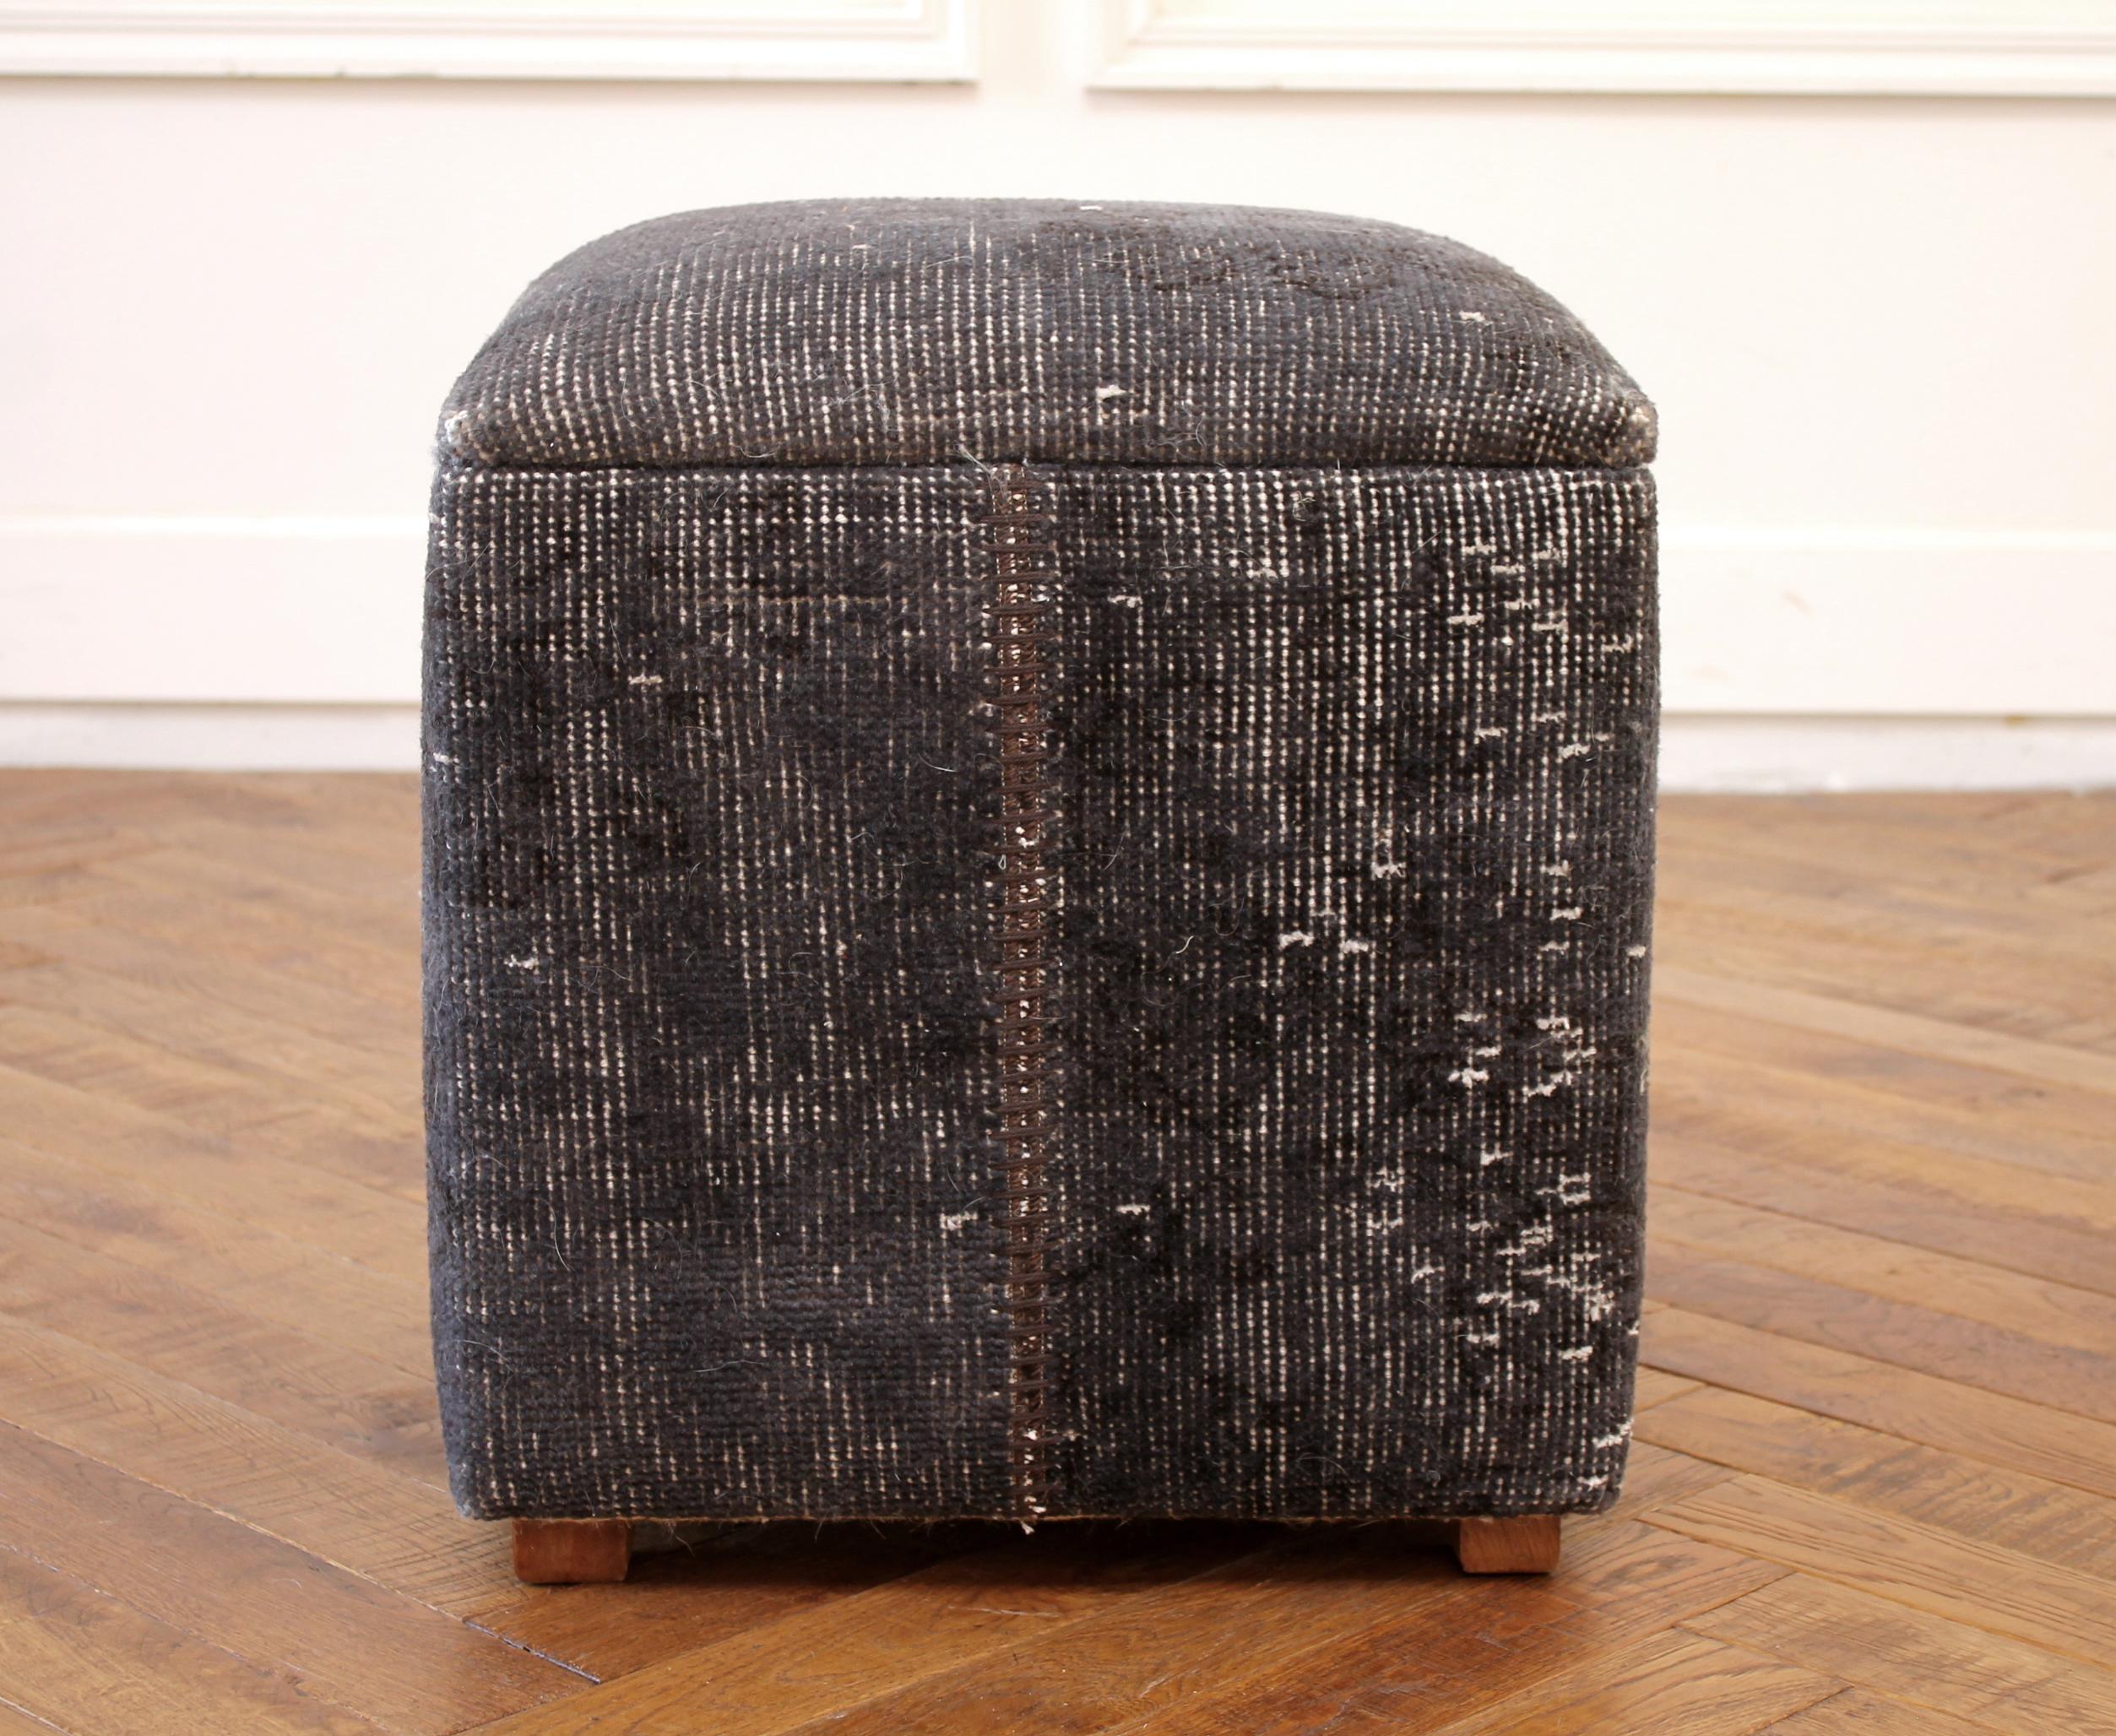 Custom made vintage Kilim rug cube ottoman.
Measures: 17.5